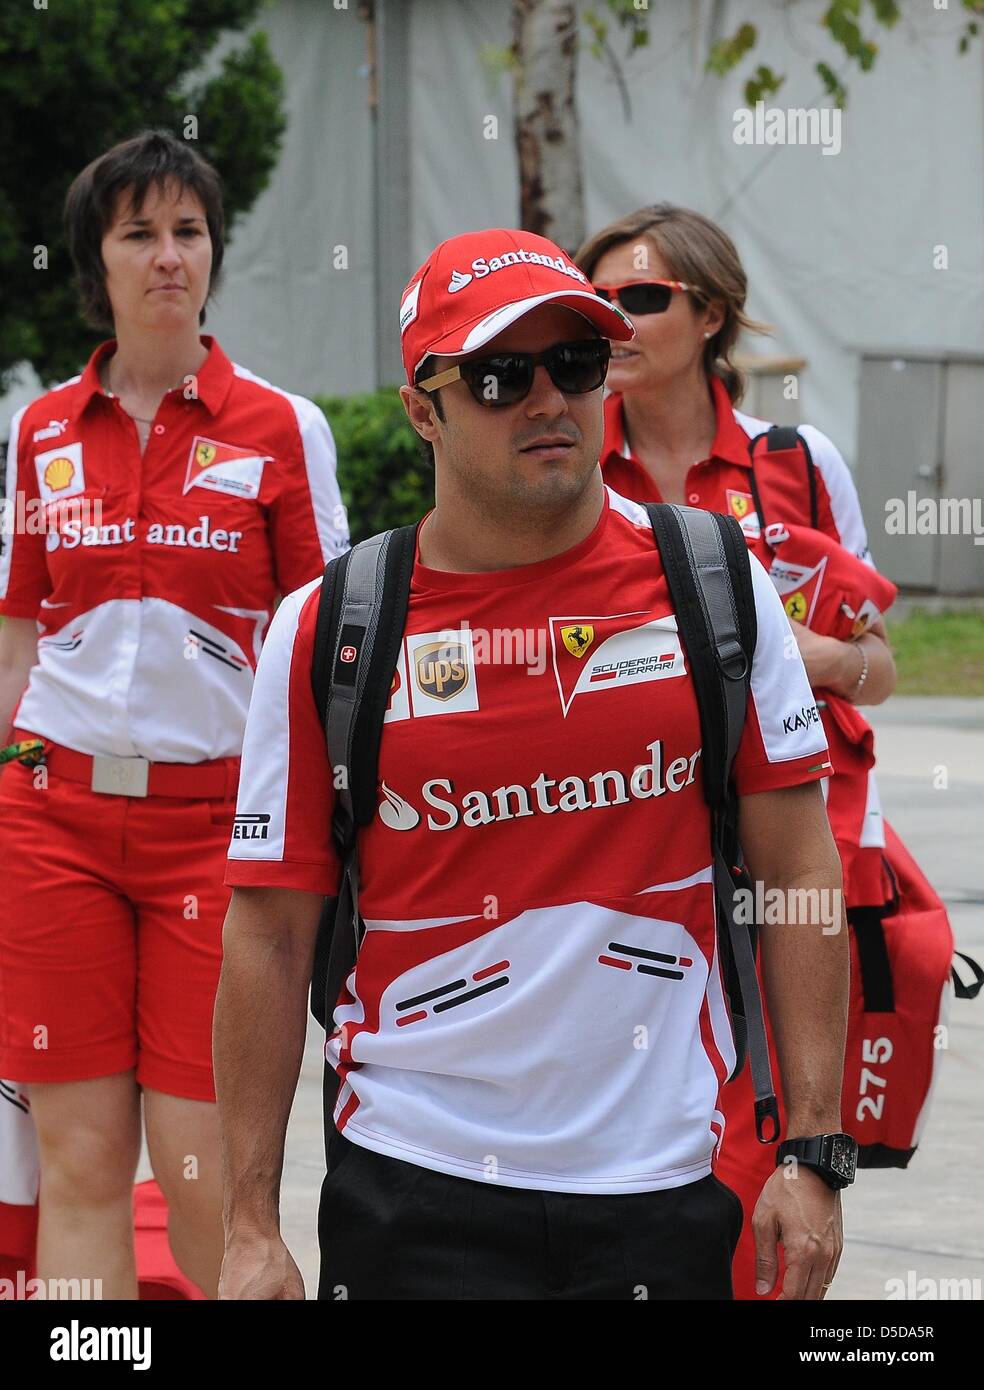 Le 21 mars 2013, Sepang, Malaisie - Scuderia Ferrari Felipe Massa, pilote de Formule 1 du Brésil marche à travers enclos dans le Circuit International de Sepang sur la Formule Un Grand Prix de Malaisie 2013. (Photo de Robertus/Pudyanto AFLO) Banque D'Images